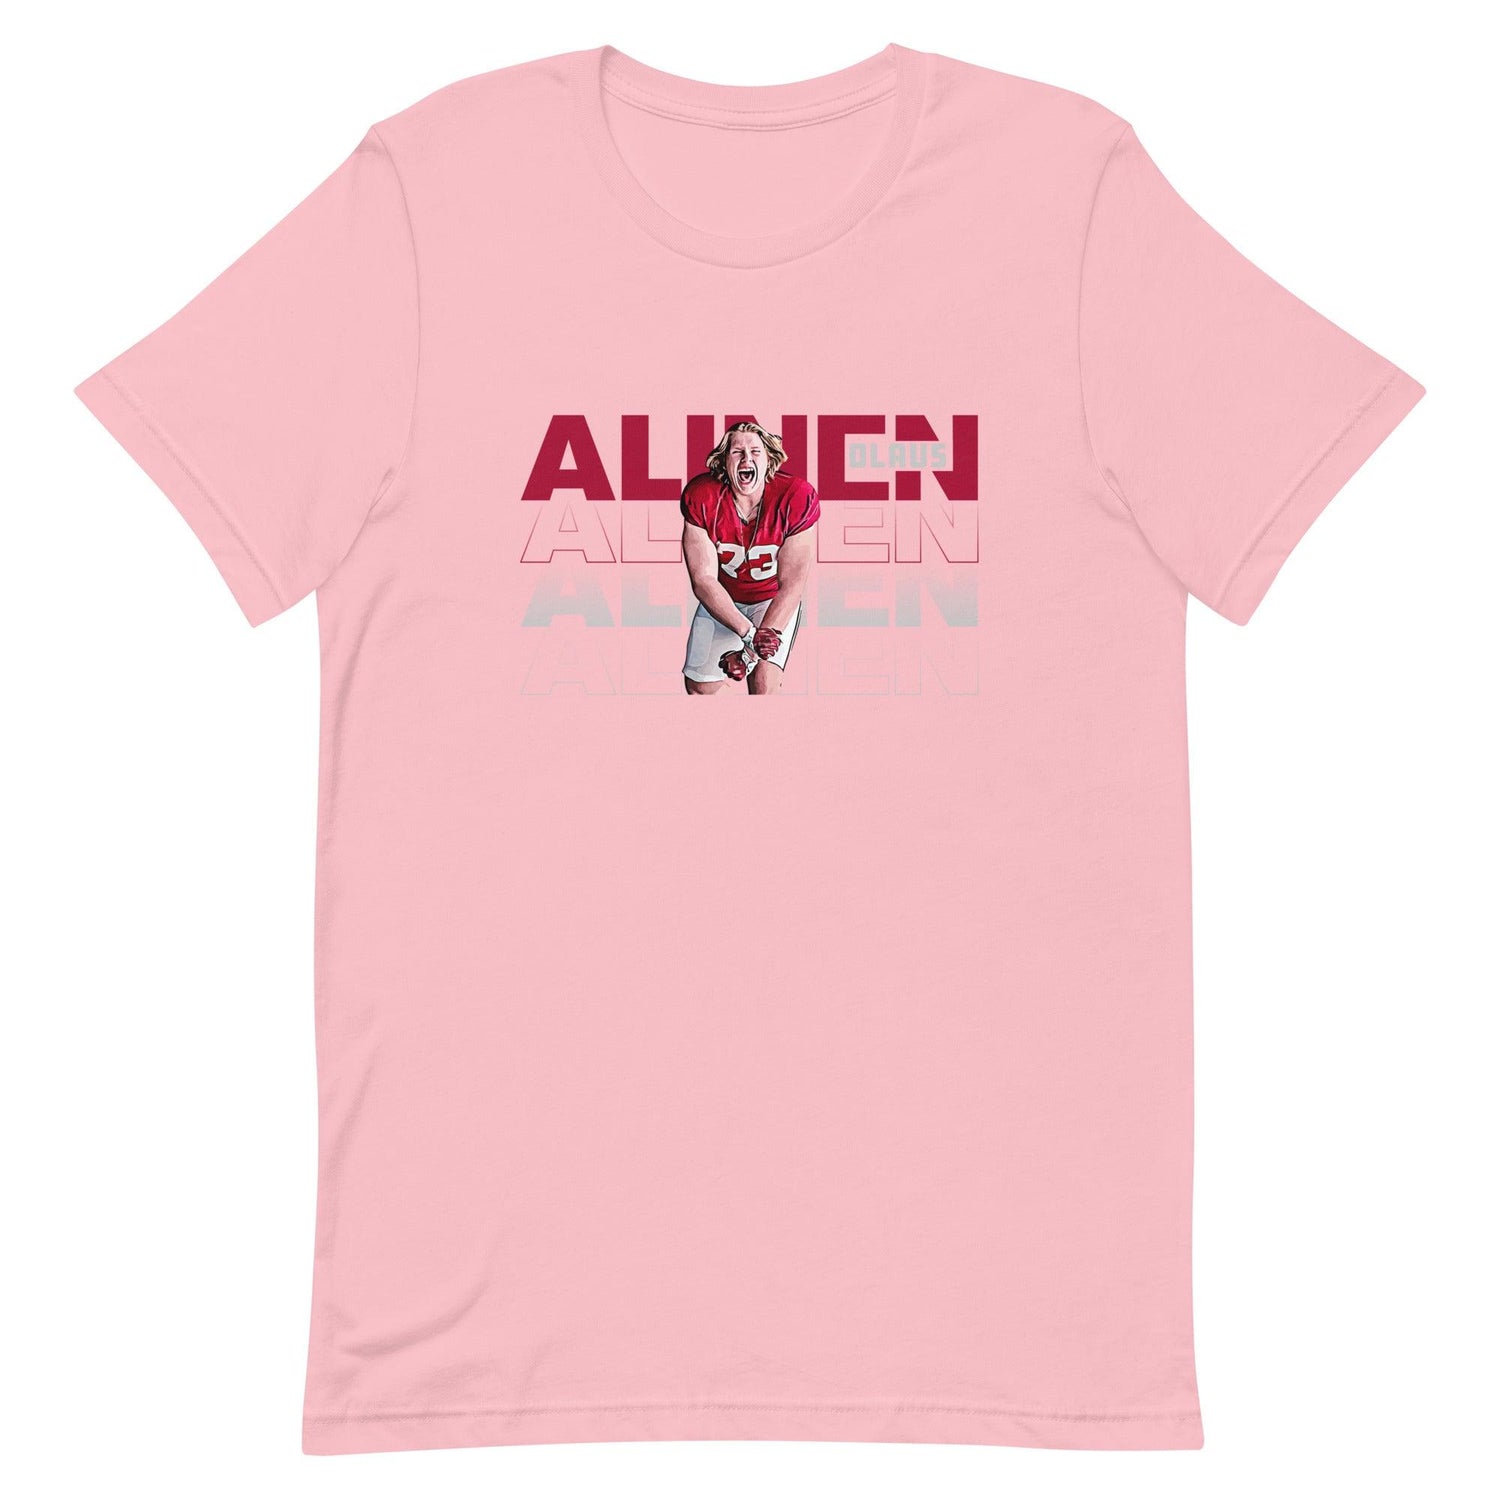 Olaus Alinen "Gameday" t-shirt - Fan Arch